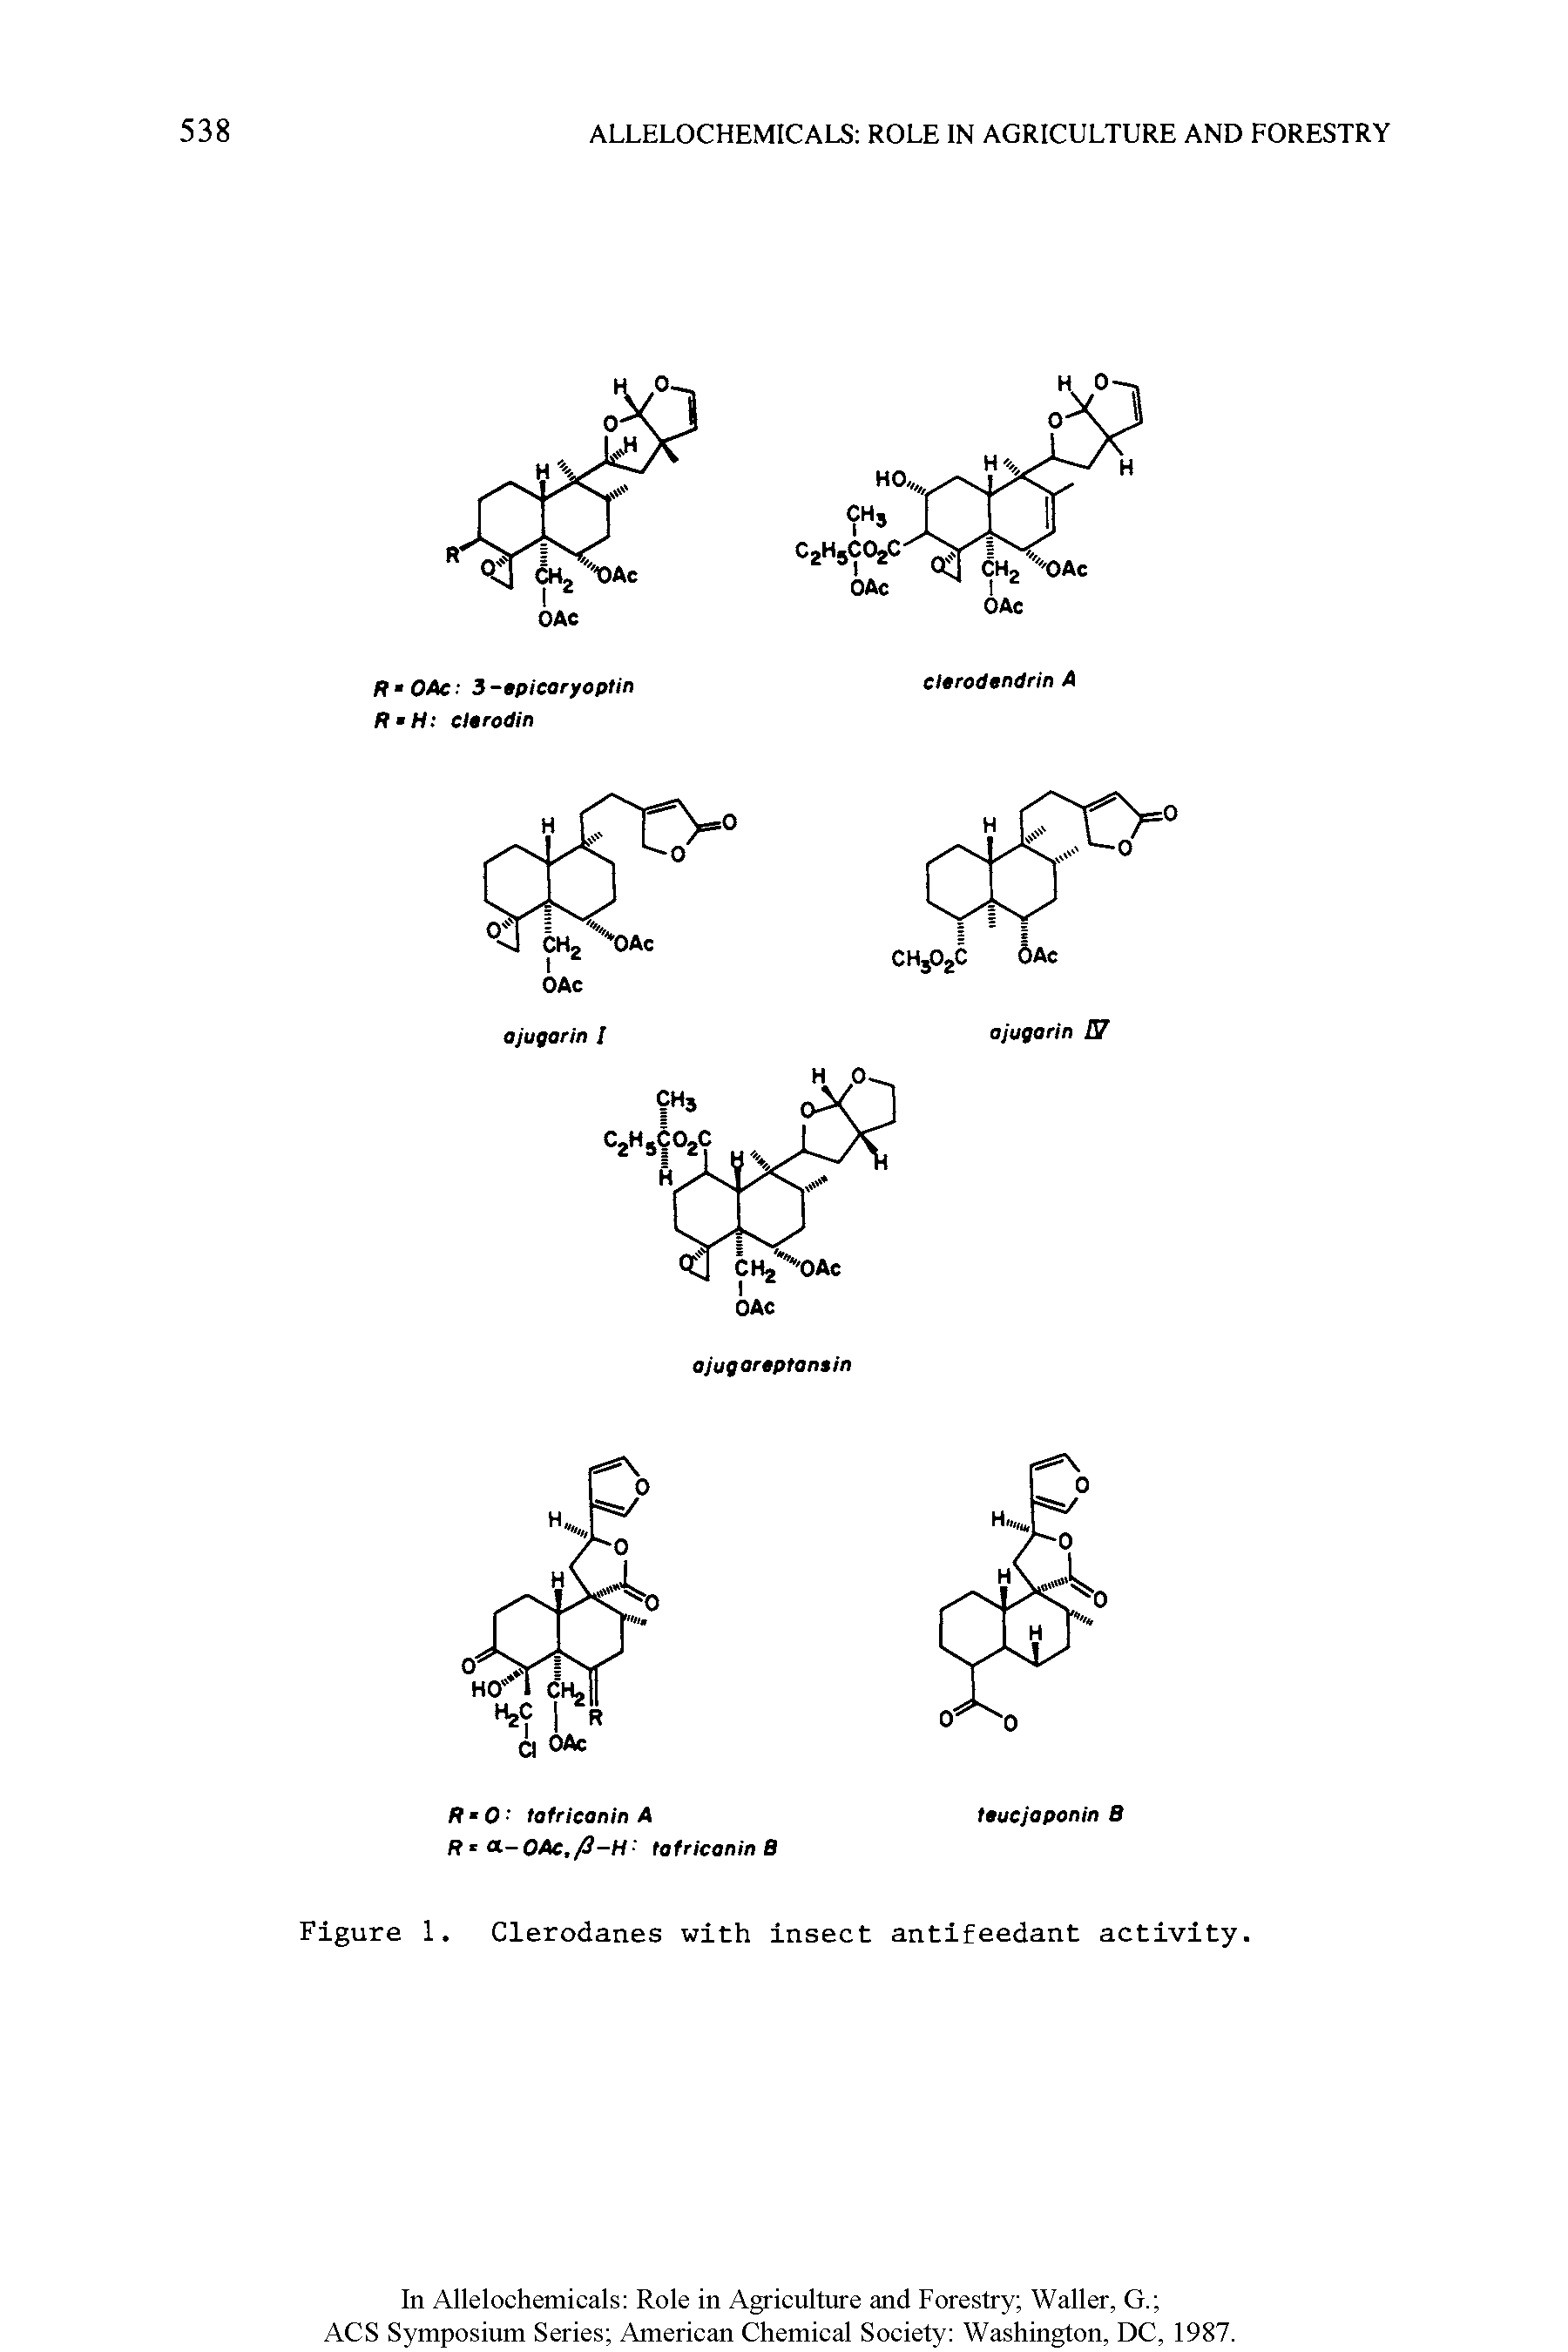 Figure 1. Clerodanes with insect antifeedant activity.